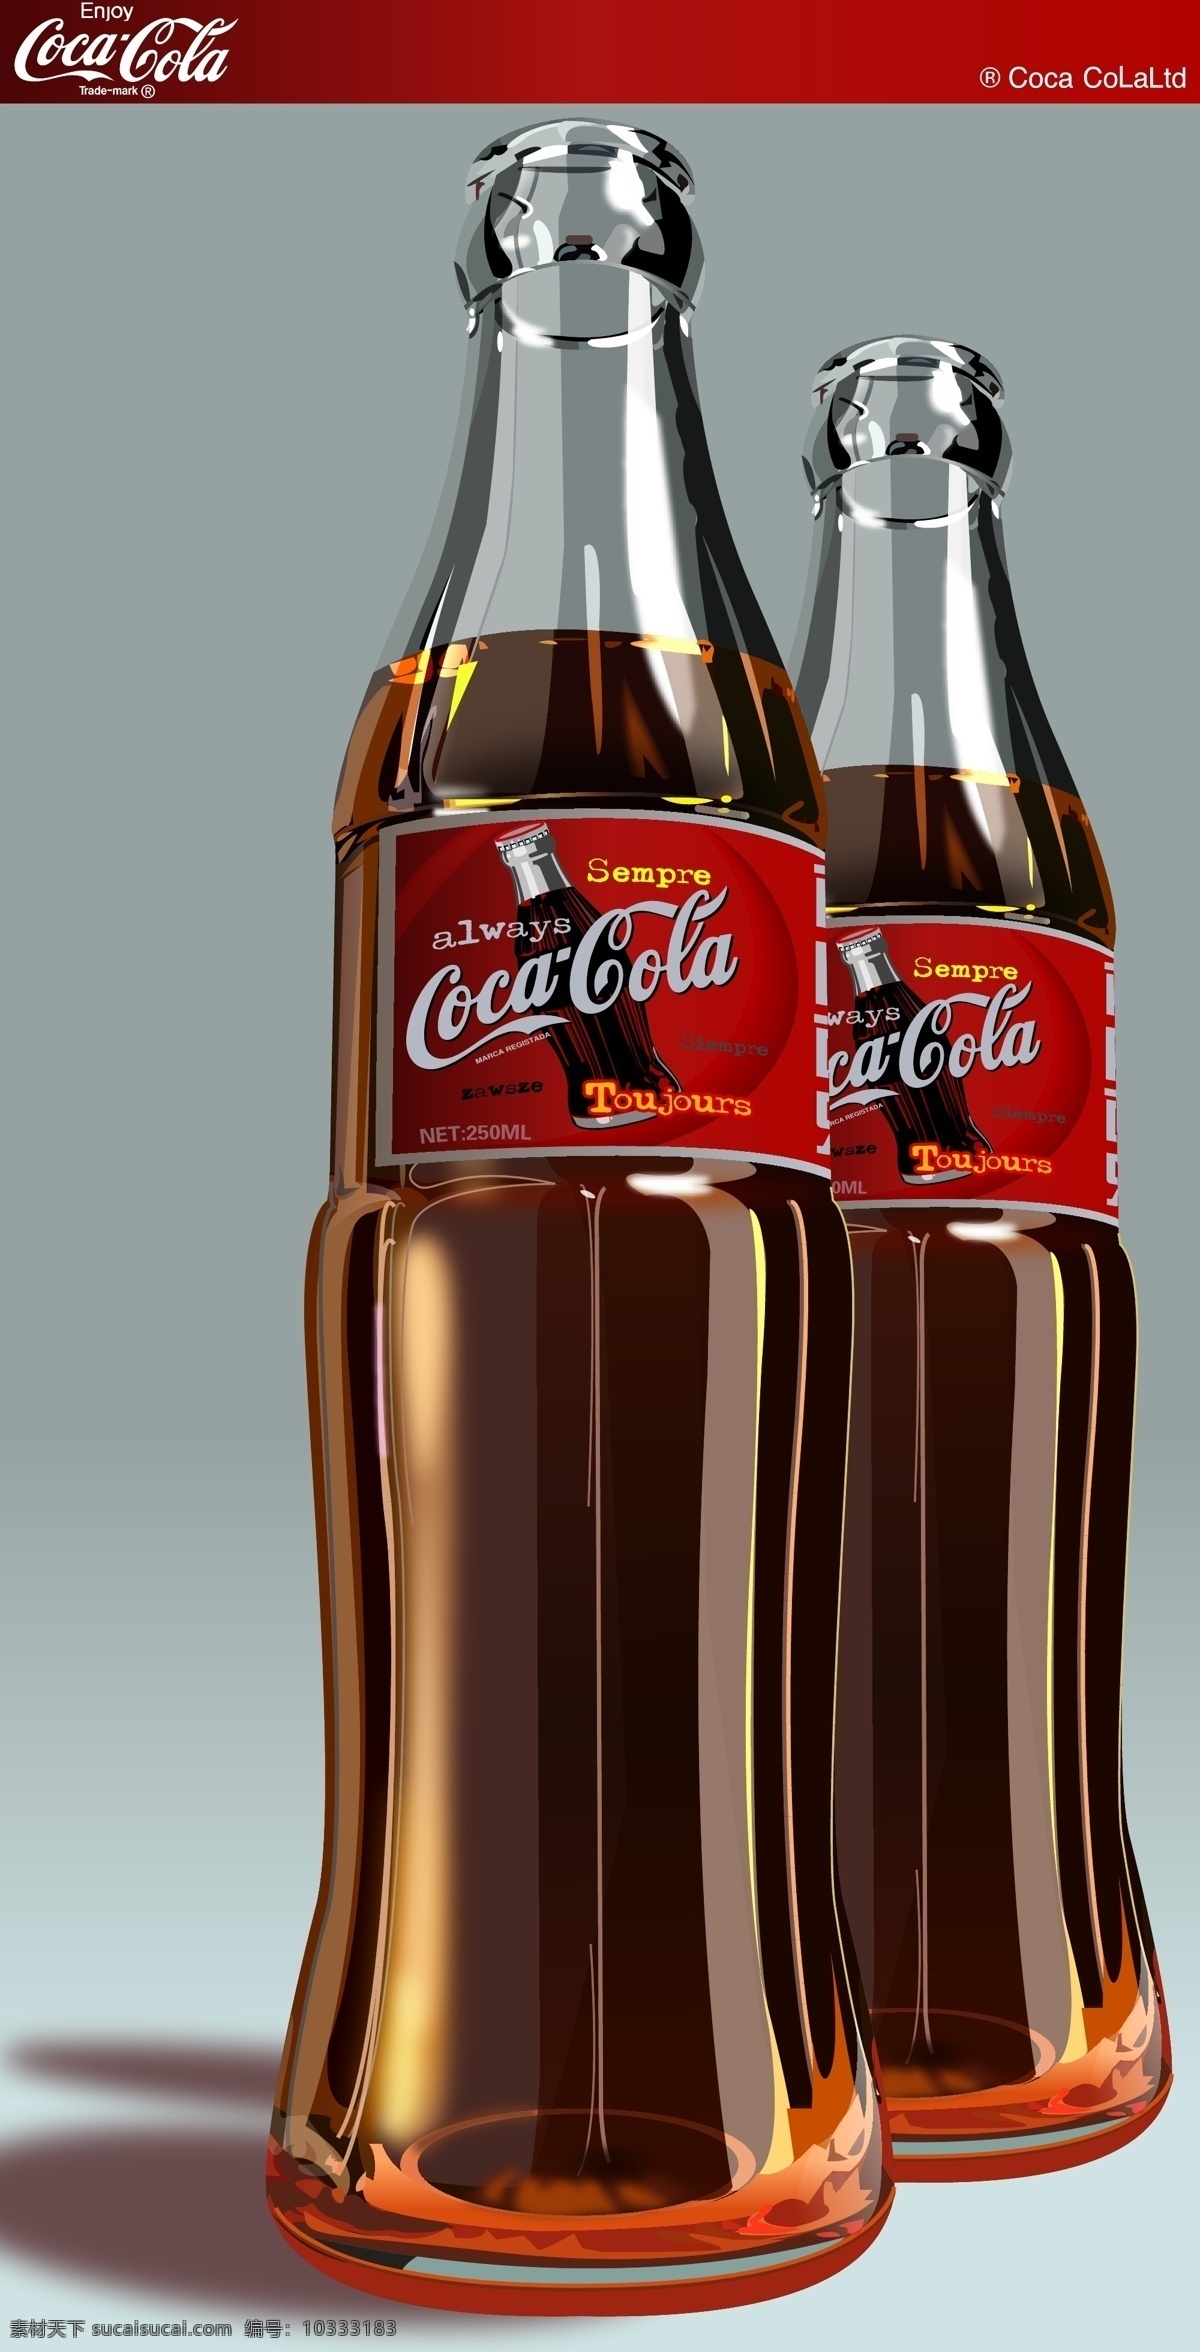 可乐瓶 矢量图 可乐 玻璃瓶 瓶装可乐 可乐标志 cocacola 红 餐饮美食 生活百科 矢量